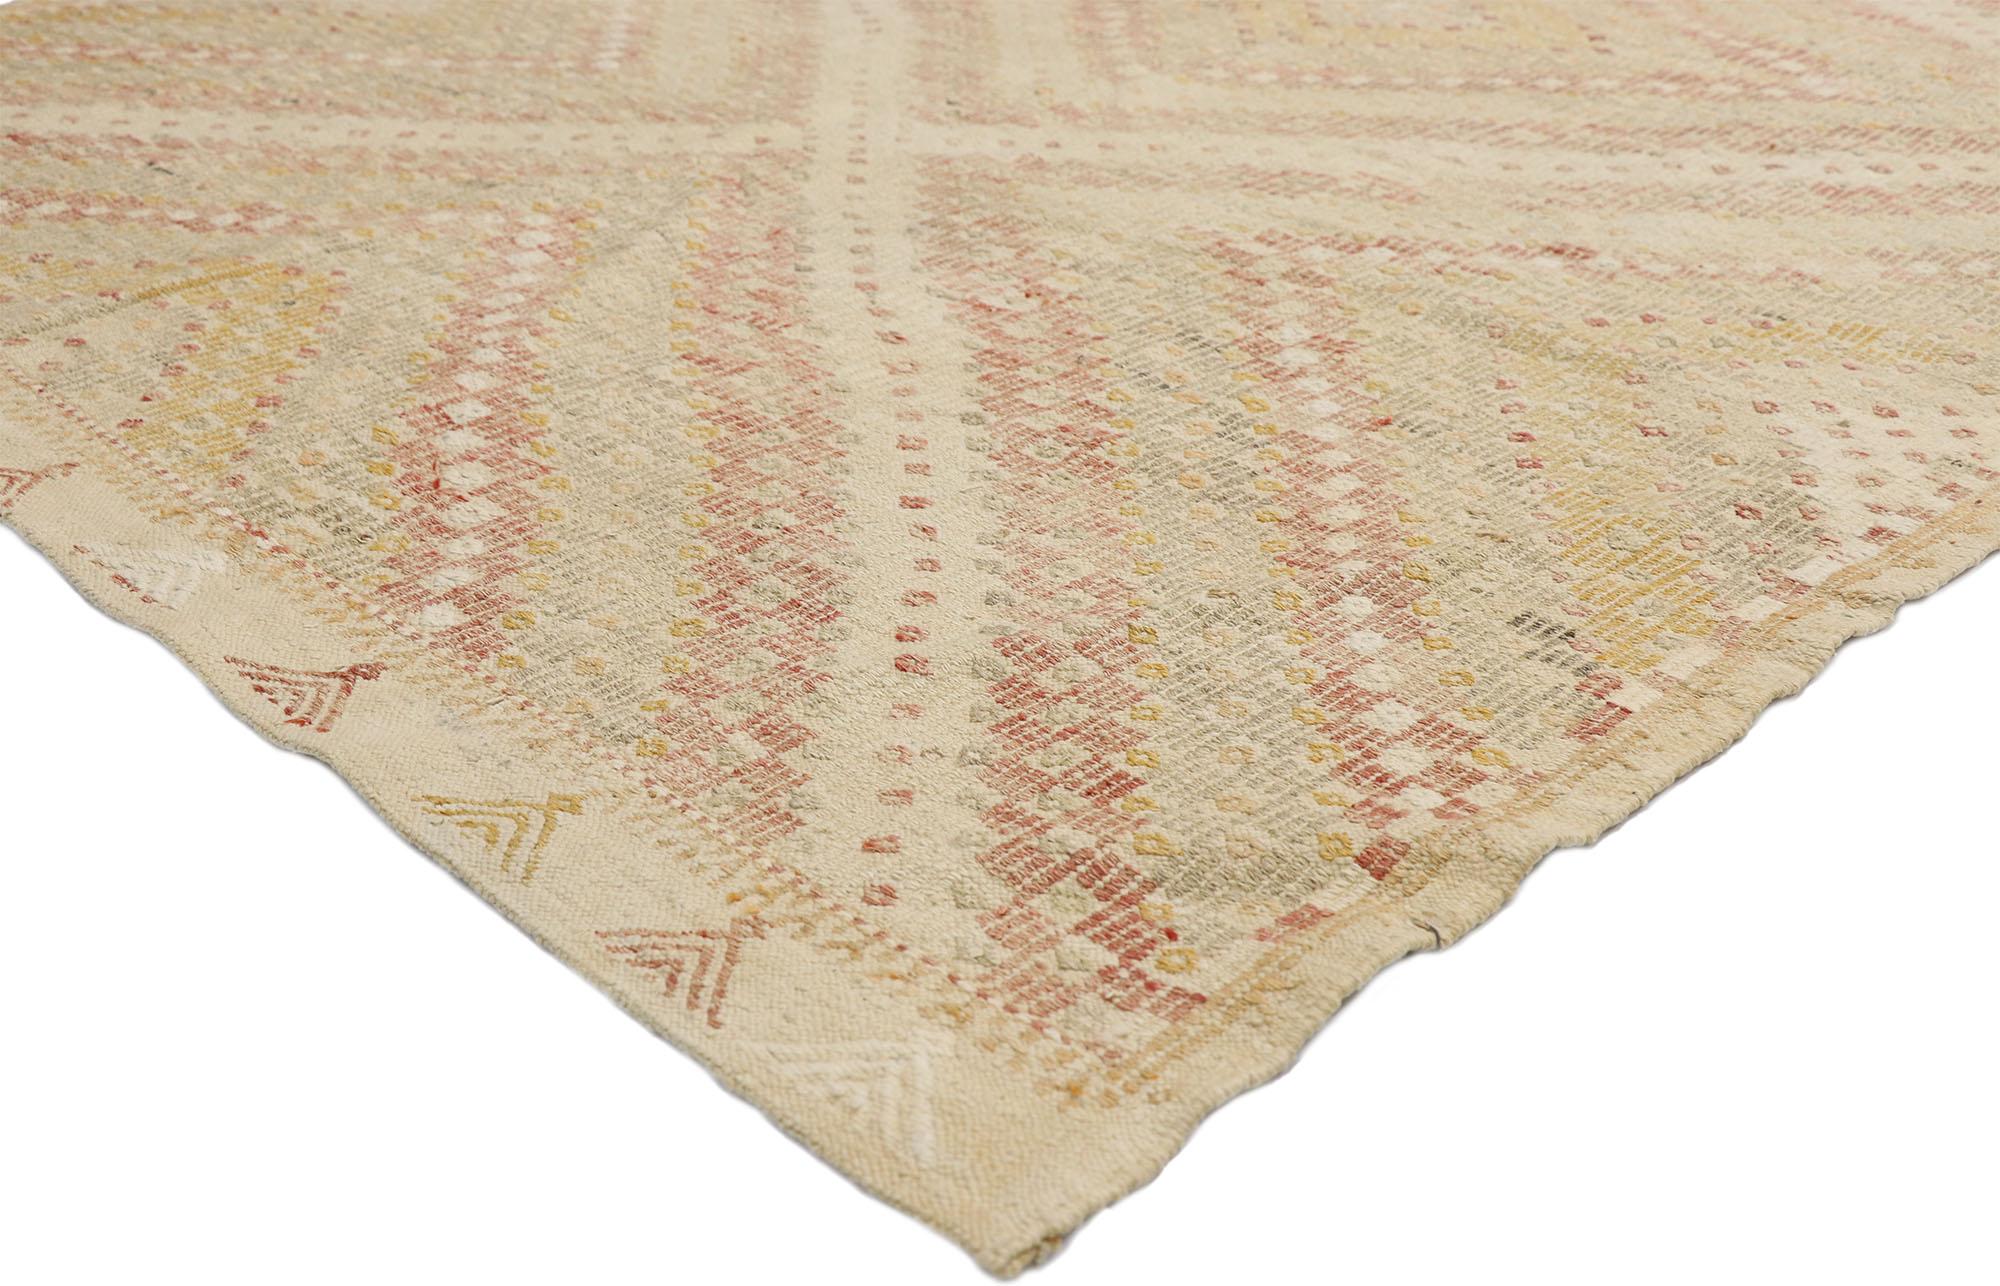 52562, tapis Kilim turc vintage en mauvais état avec le style colonial britannique de Southern Living. Ce tapis Kilim turc vintage en laine tissé à la main présente un losange central entouré de bandes supplémentaires rayées créant un effet